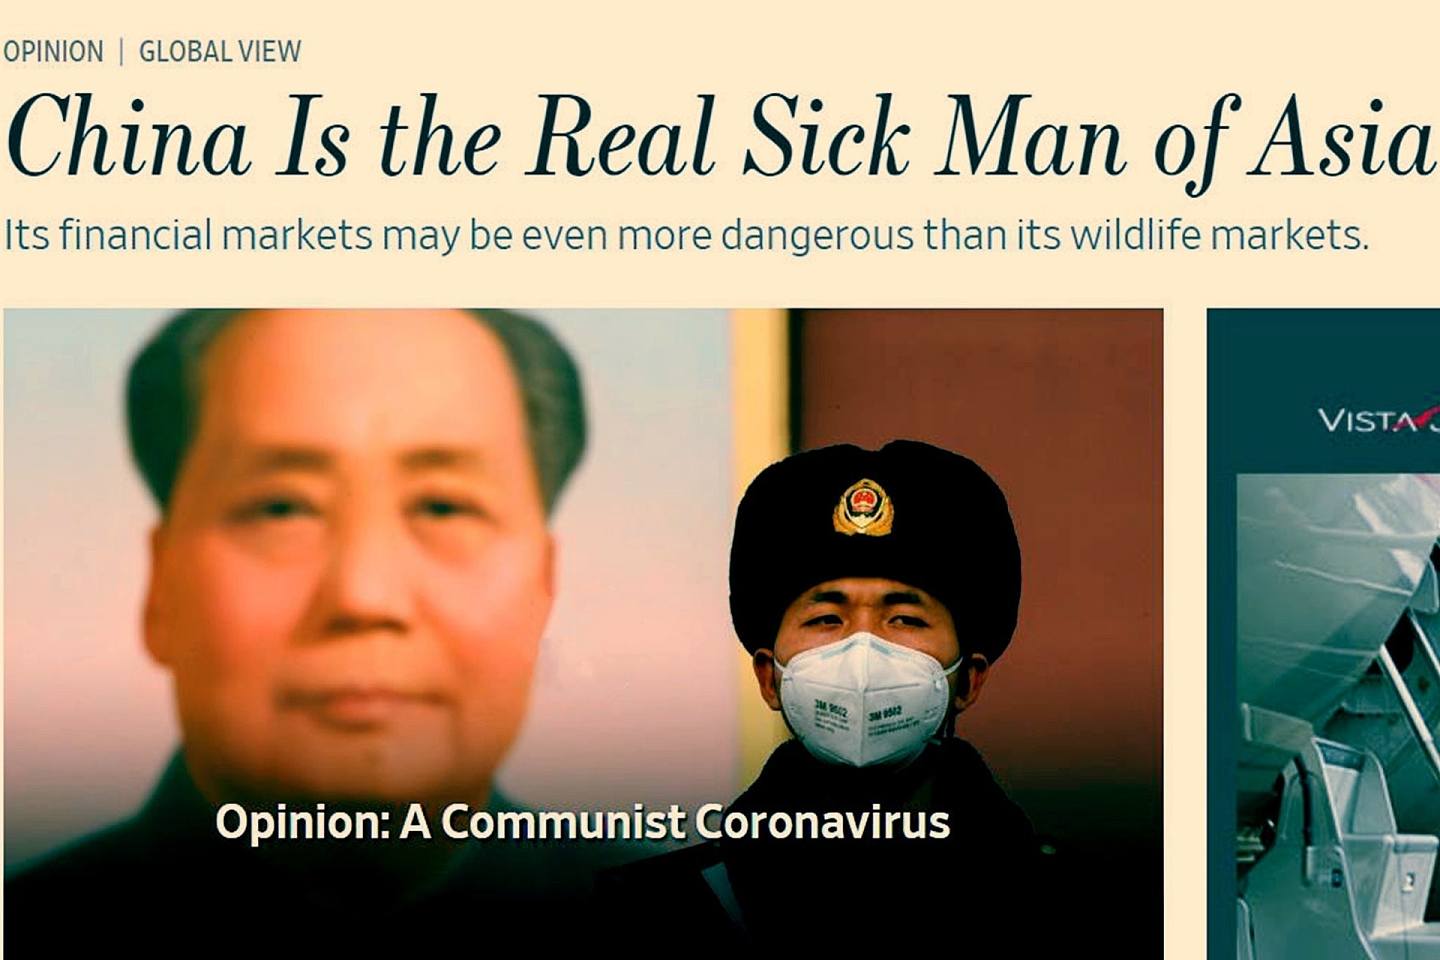 《华尔街日报》借新冠肺炎疫情对中国进行具有种族歧视色彩的攻击。（《华尔街日报》网站截图）